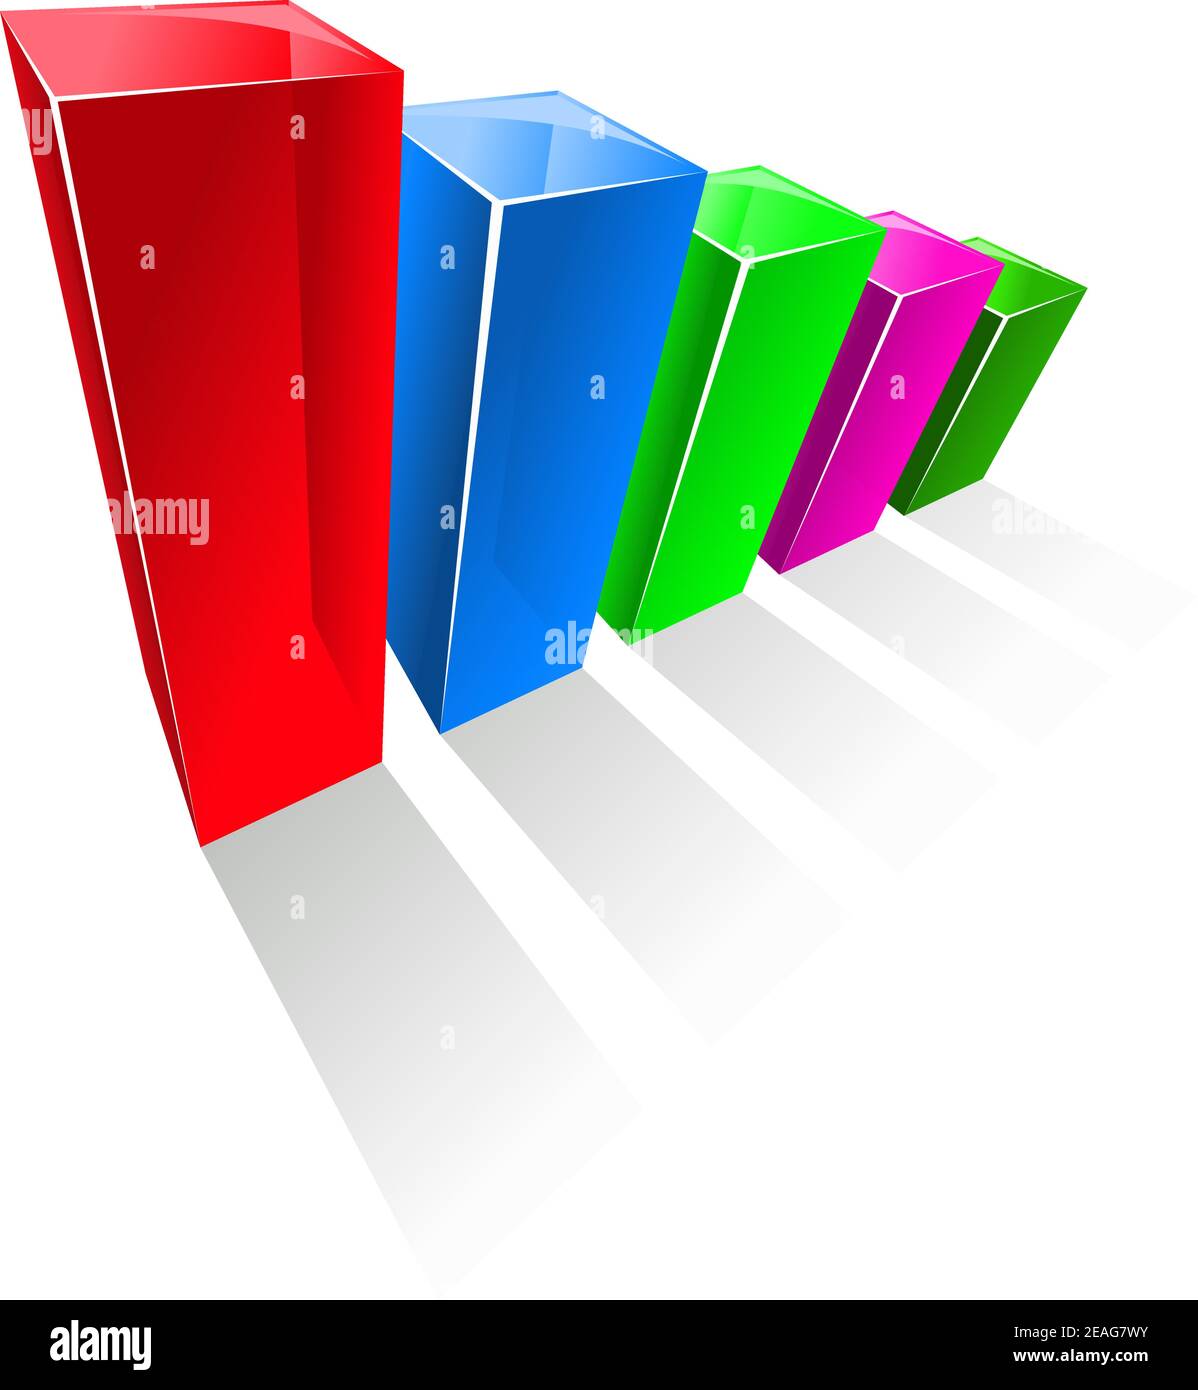 Graphique commercial avec colonnes verticales colorées, alignées du pourcentage le plus élevé à la plus petite valeur, sur fond blanc Illustration de Vecteur